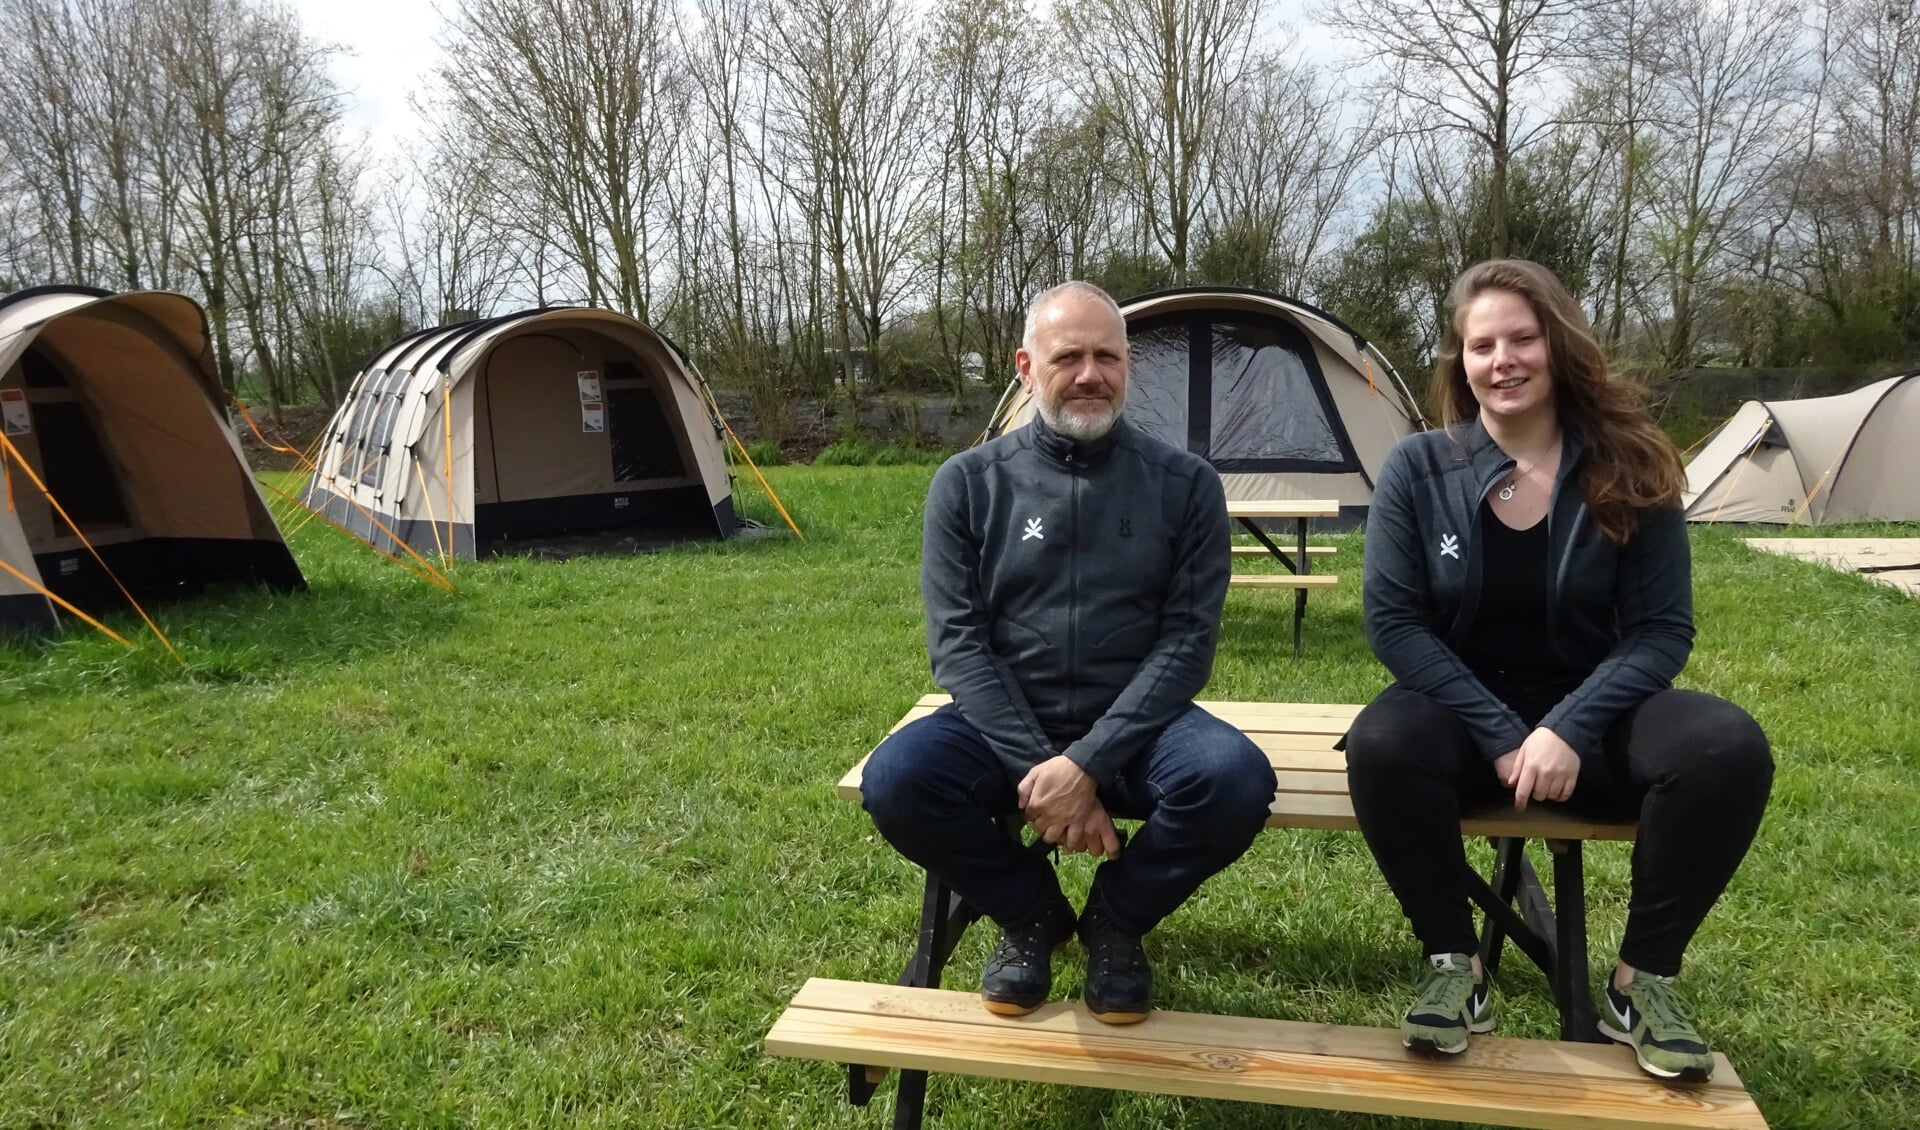 Vakantiebeleving bij outdoor- kampeerwinkel Vrijbuiter in - destadgorinchem.nl Nieuws uit de regio Gorinchem